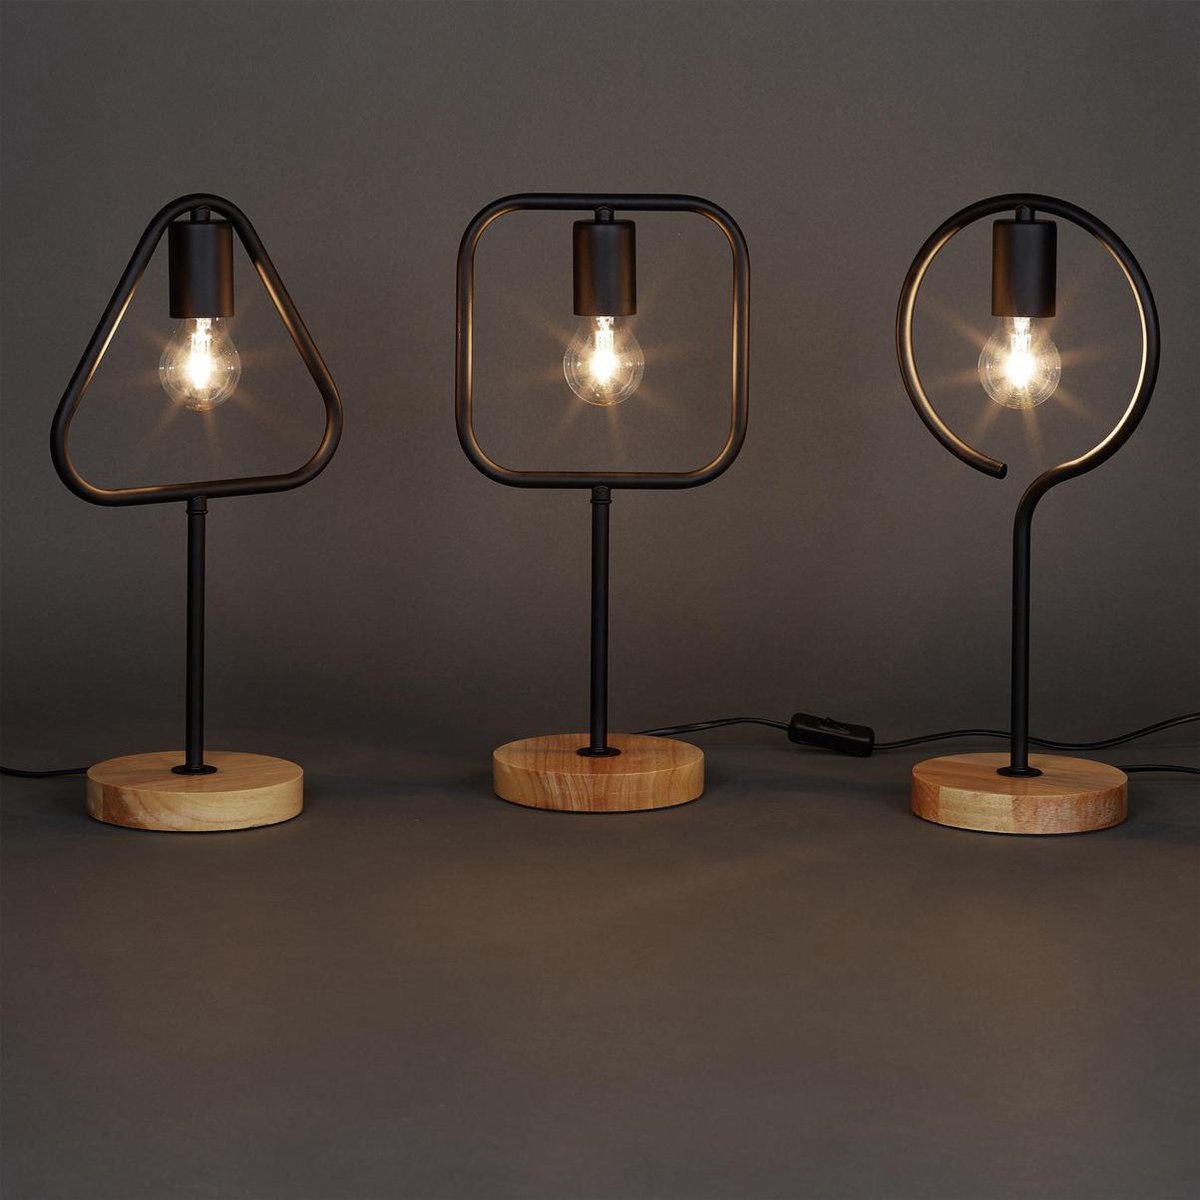 relaxdays - moderne tafellamp zonder lampenkap - leeslamp - metaal hout -  lamp Vierkant | bol.com